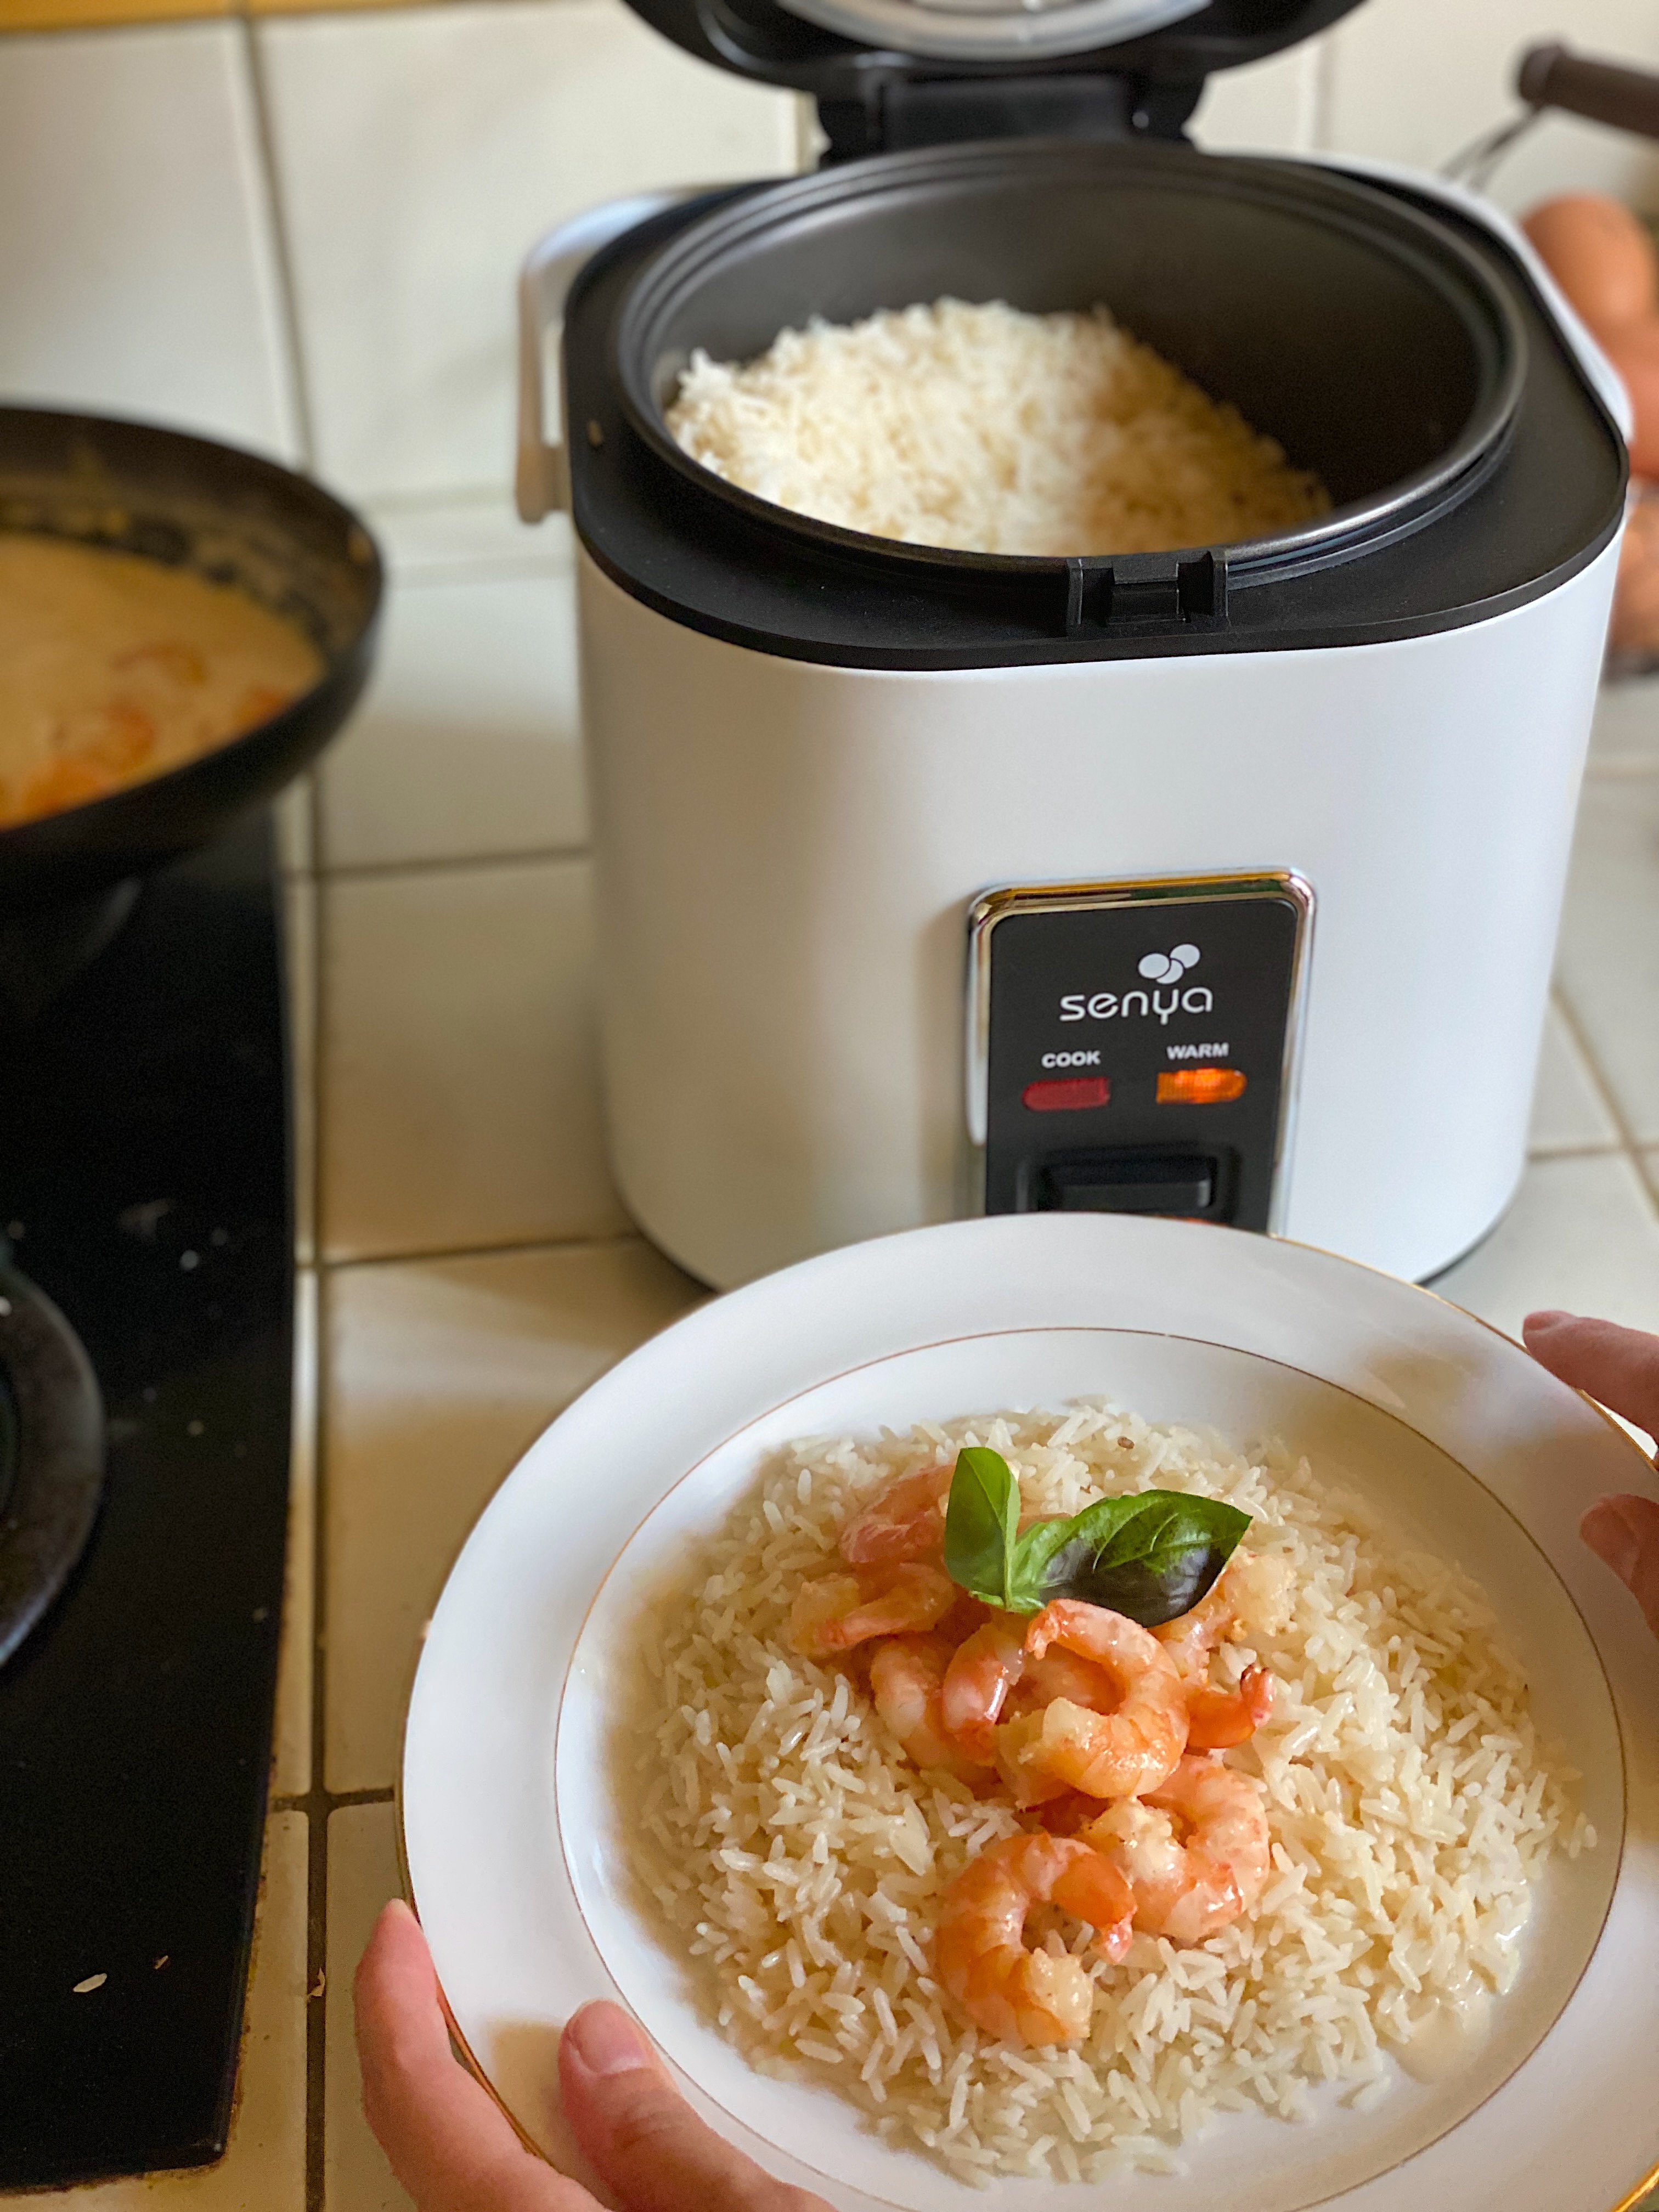 On a testé le cuiseur à riz (rice cooker) My Rice Perfect de Senya